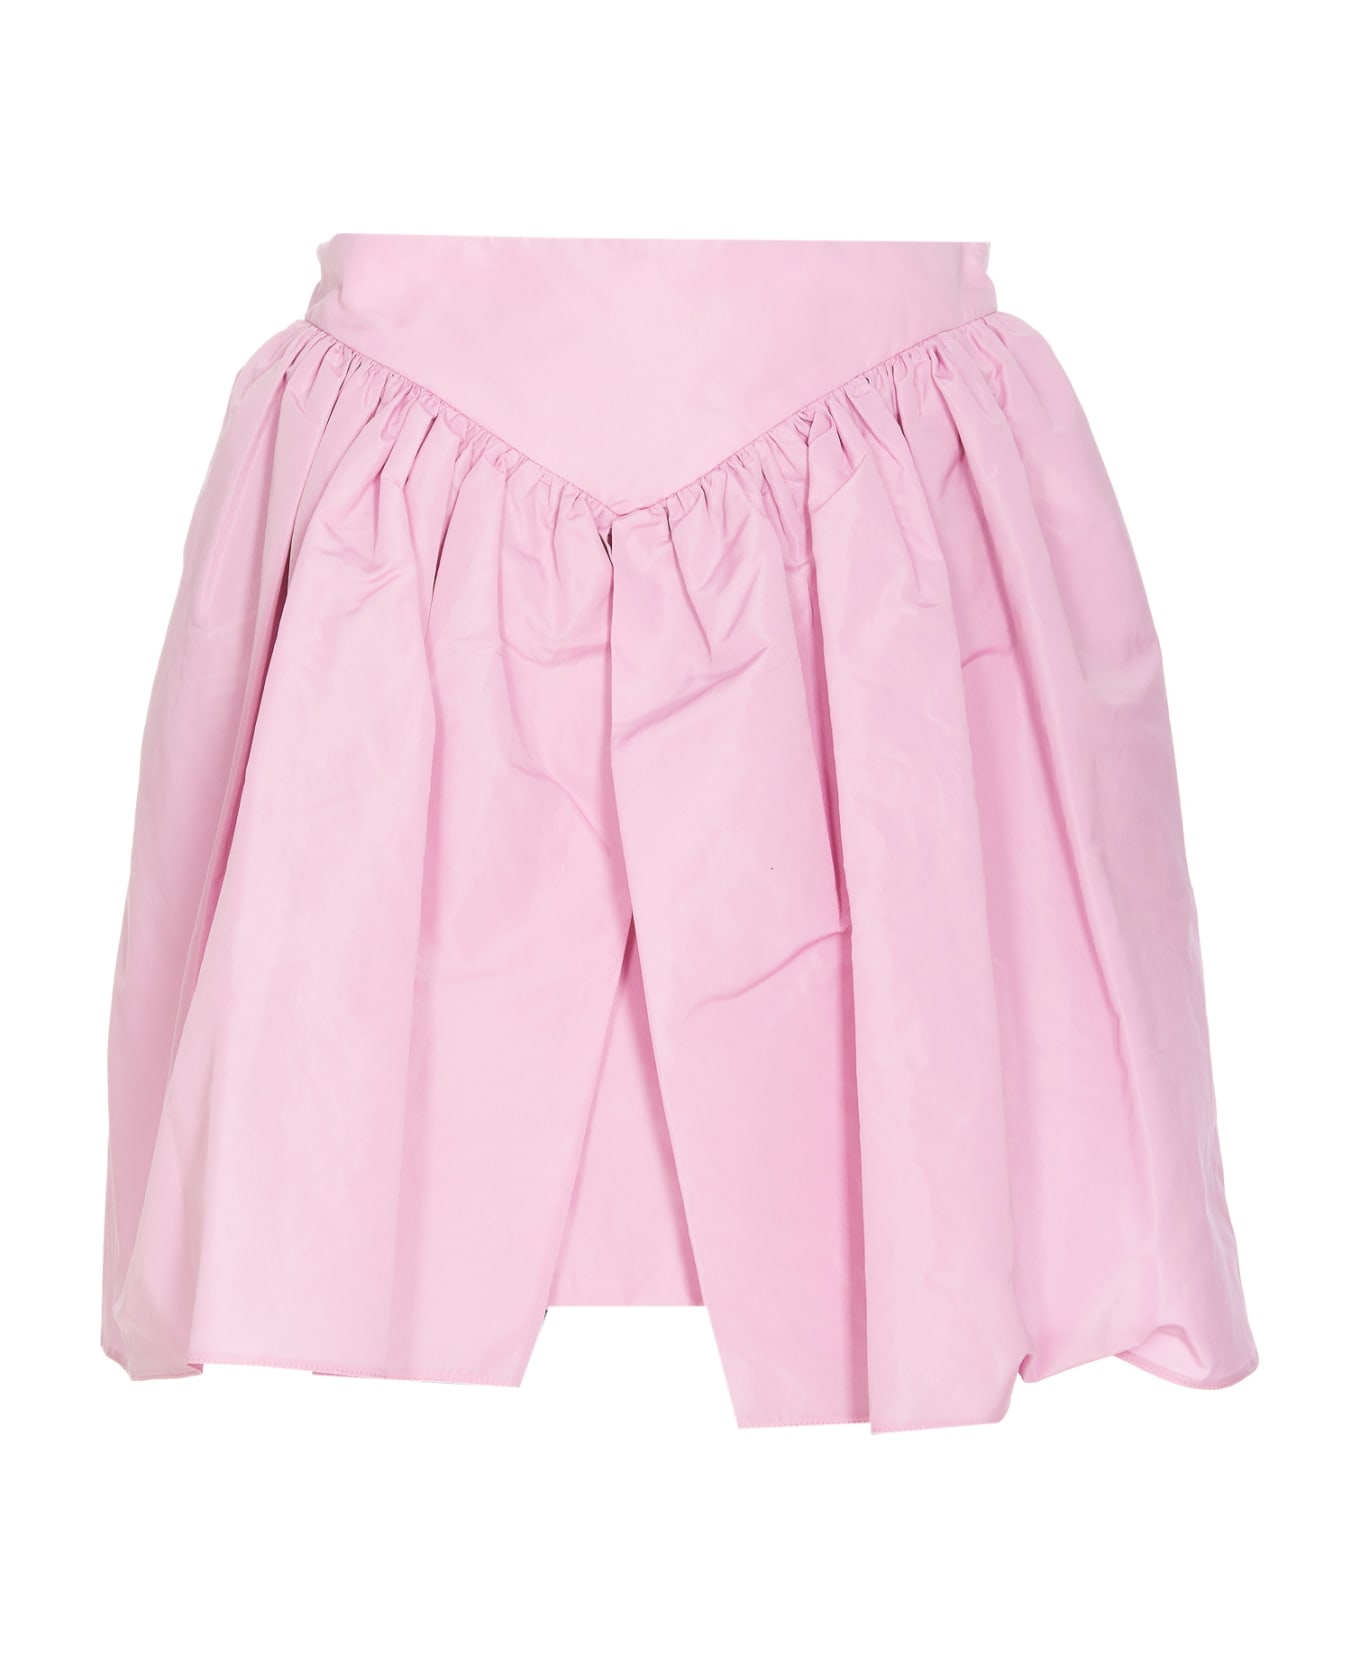 Pinko Cabella Skirt - Pink スカート